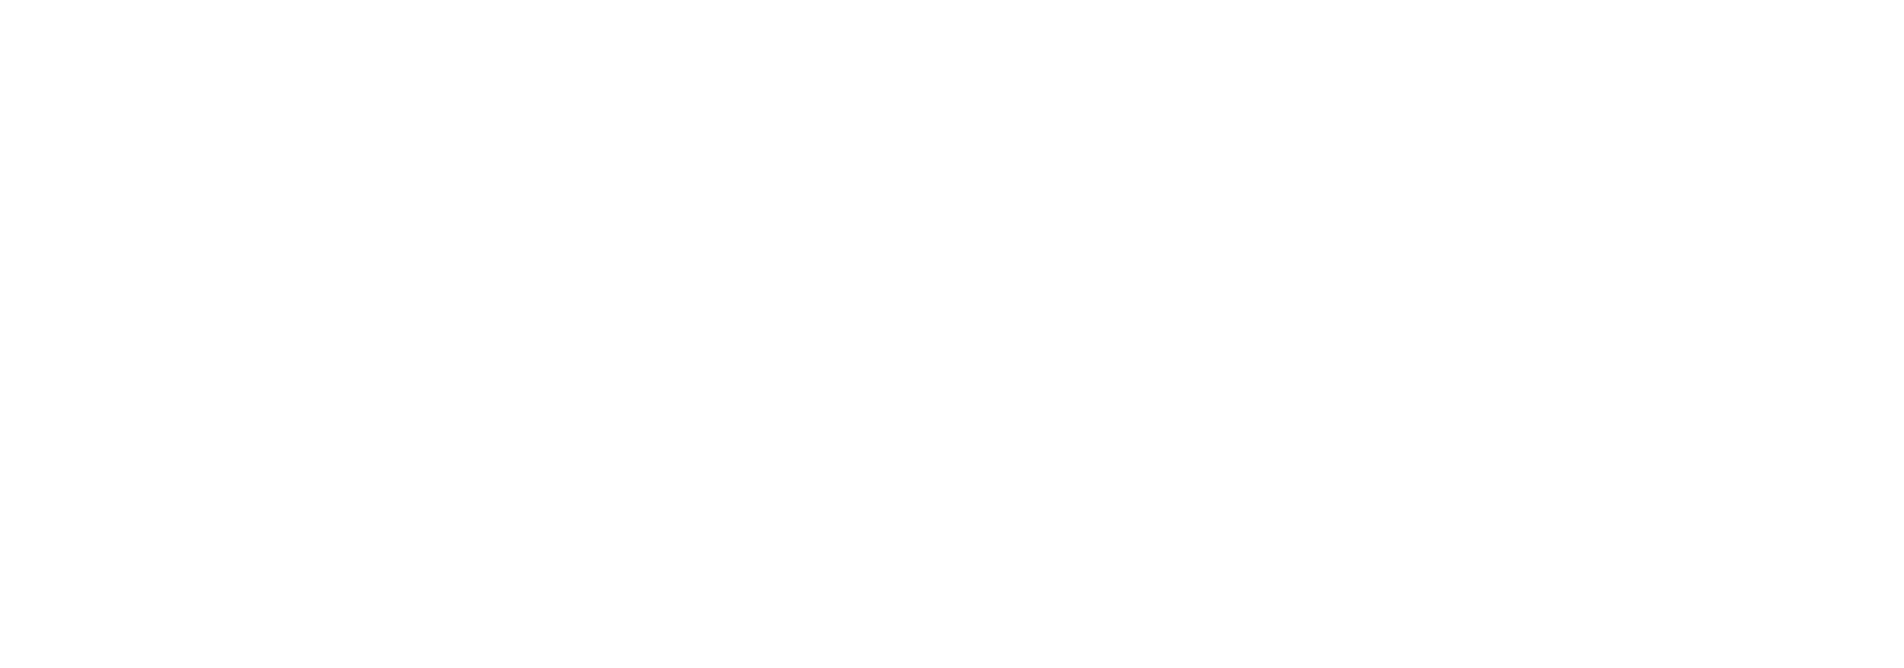 Century 21 Estrie